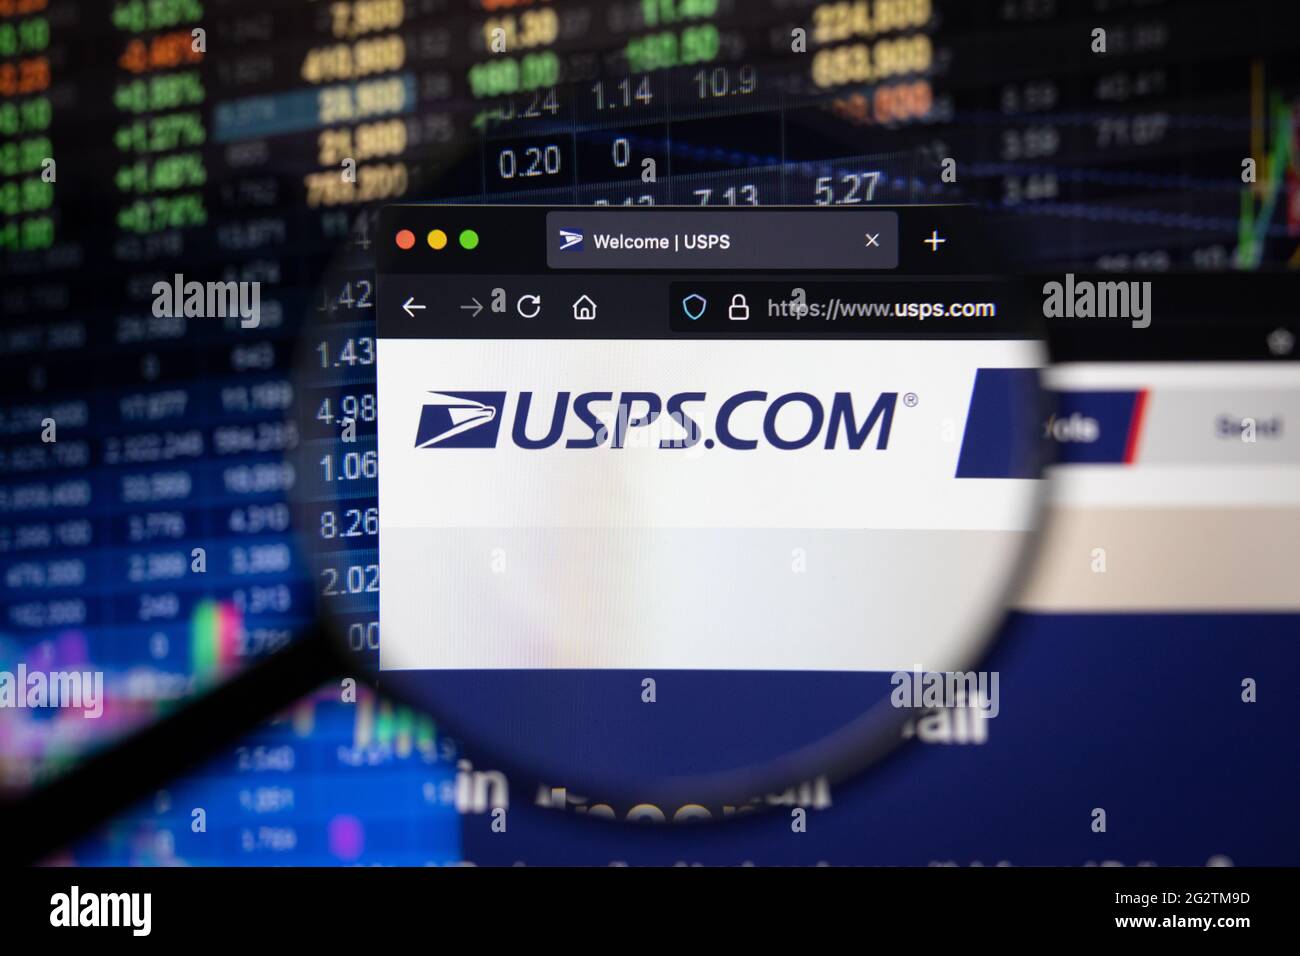 USPS États-Unis postal Service Company logo sur un site Web avec des développements flous du marché boursier en arrière-plan, vu sur un écran d'ordinateur Banque D'Images